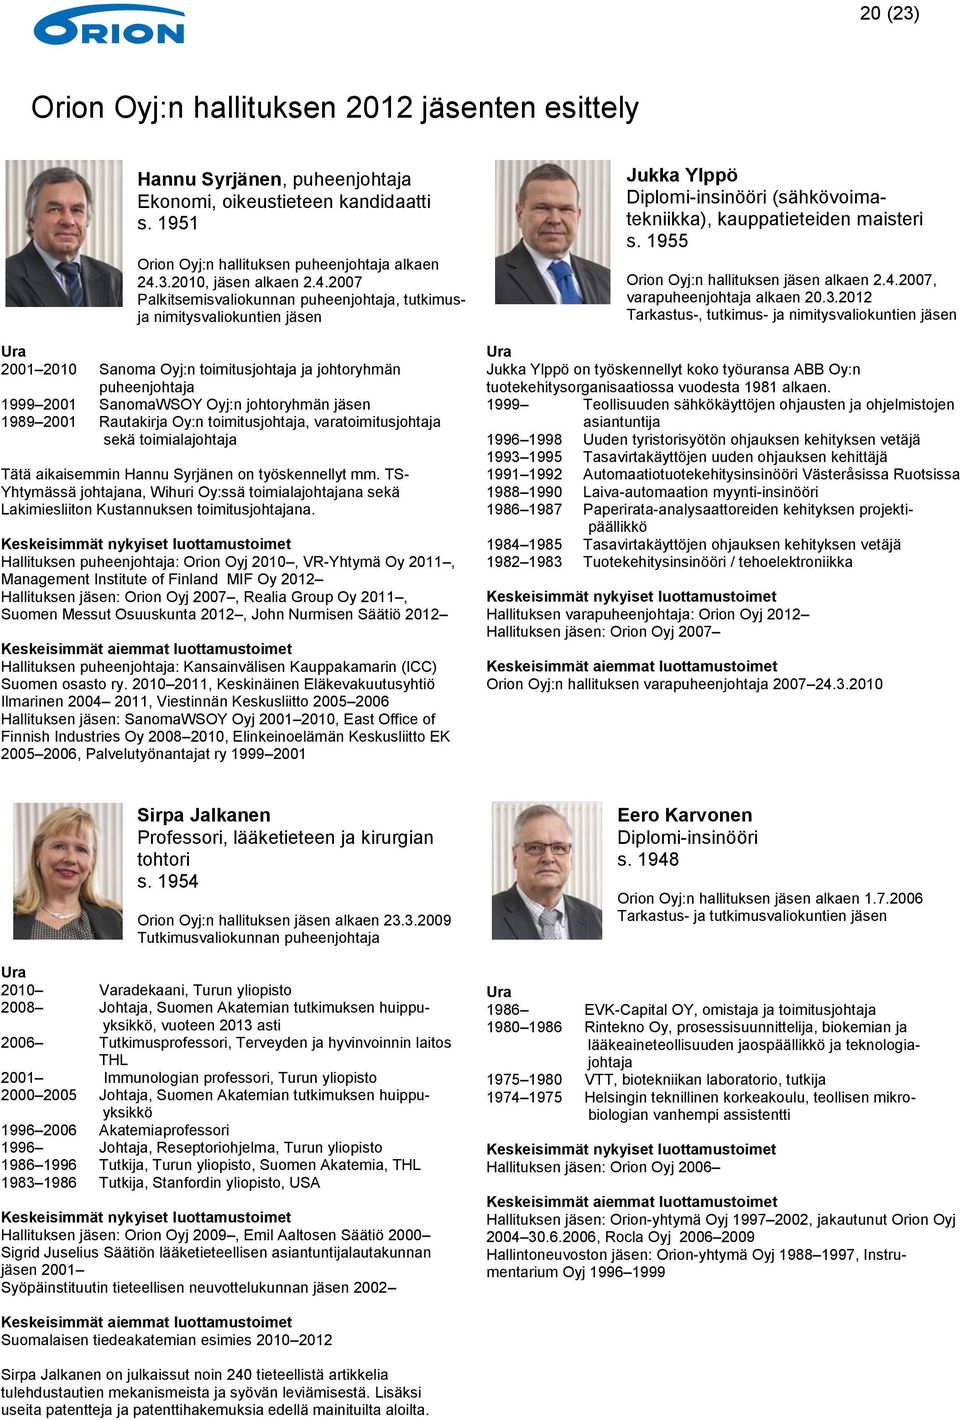 2001 Rautakirja Oy:n toimitusjohtaja, varatoimitusjohtaja sekä toimialajohtaja Tätä aikaisemmin Hannu Syrjänen on työskennellyt mm.